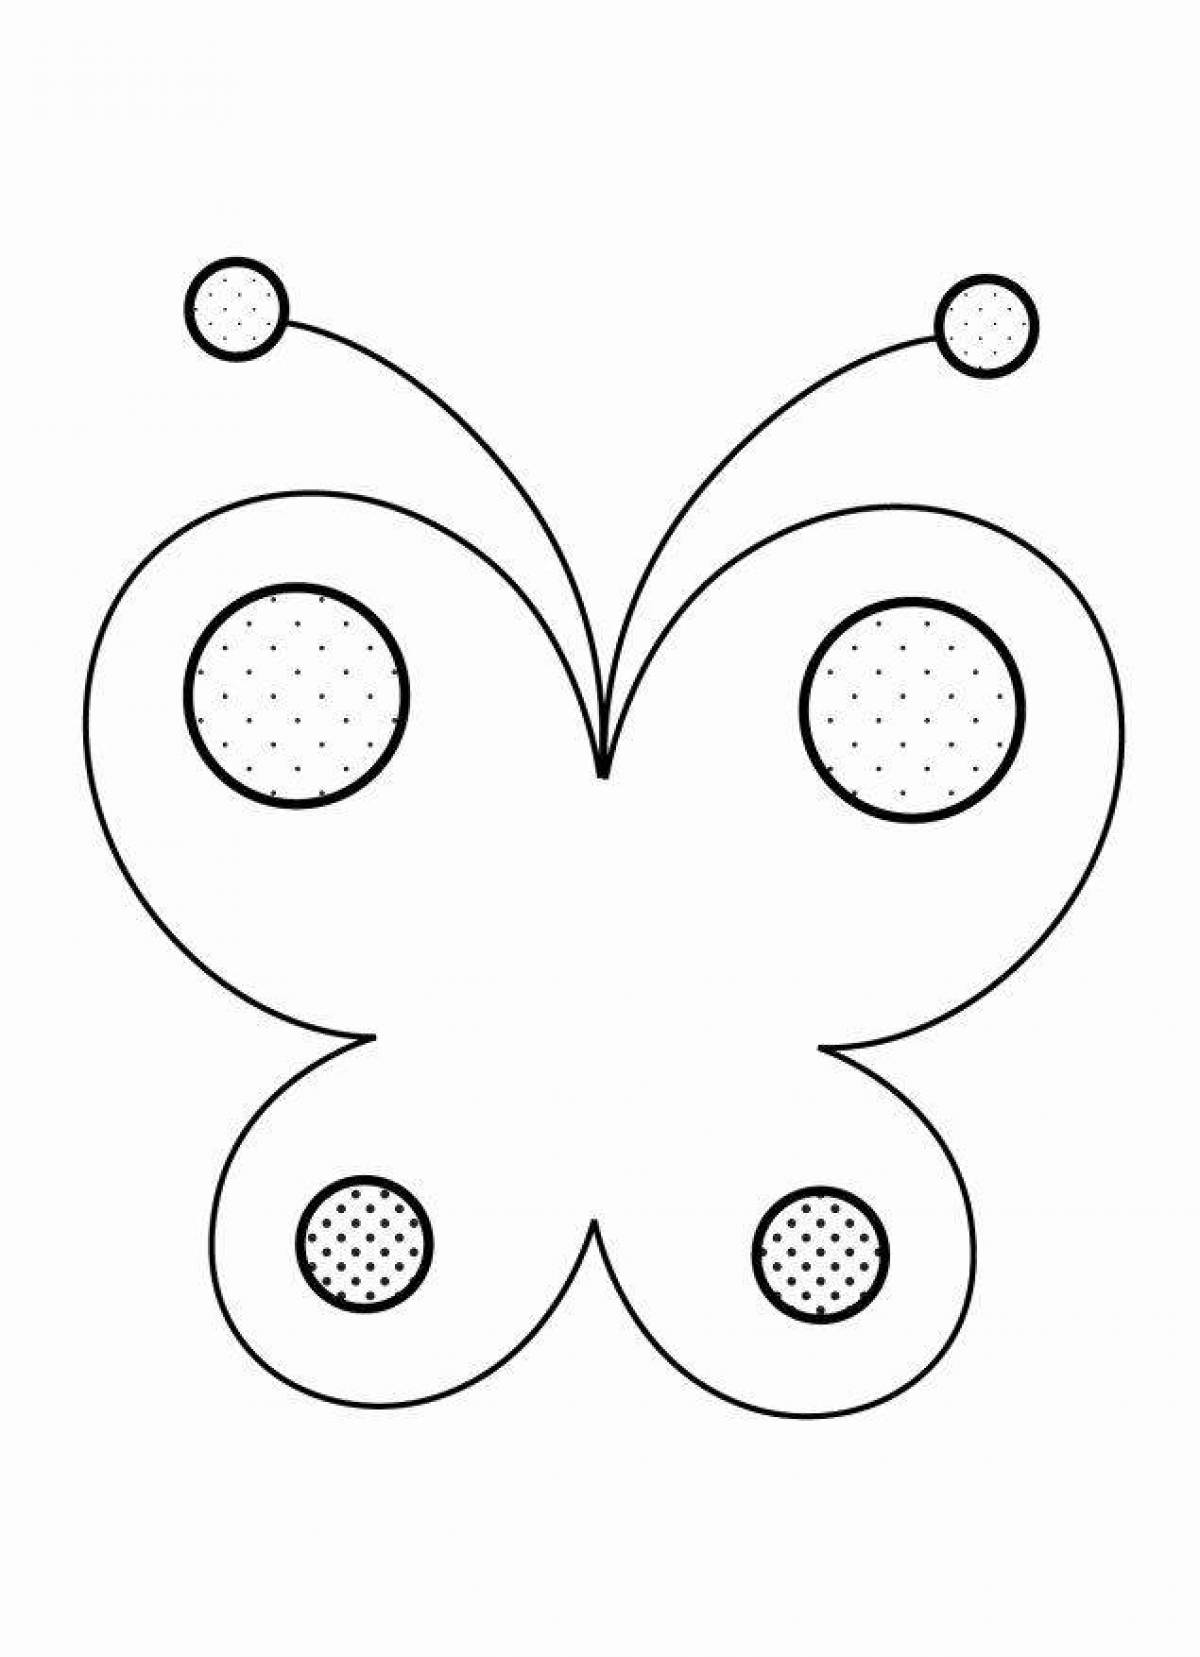 Великолепная раскраска бабочки для детей 3-4 лет